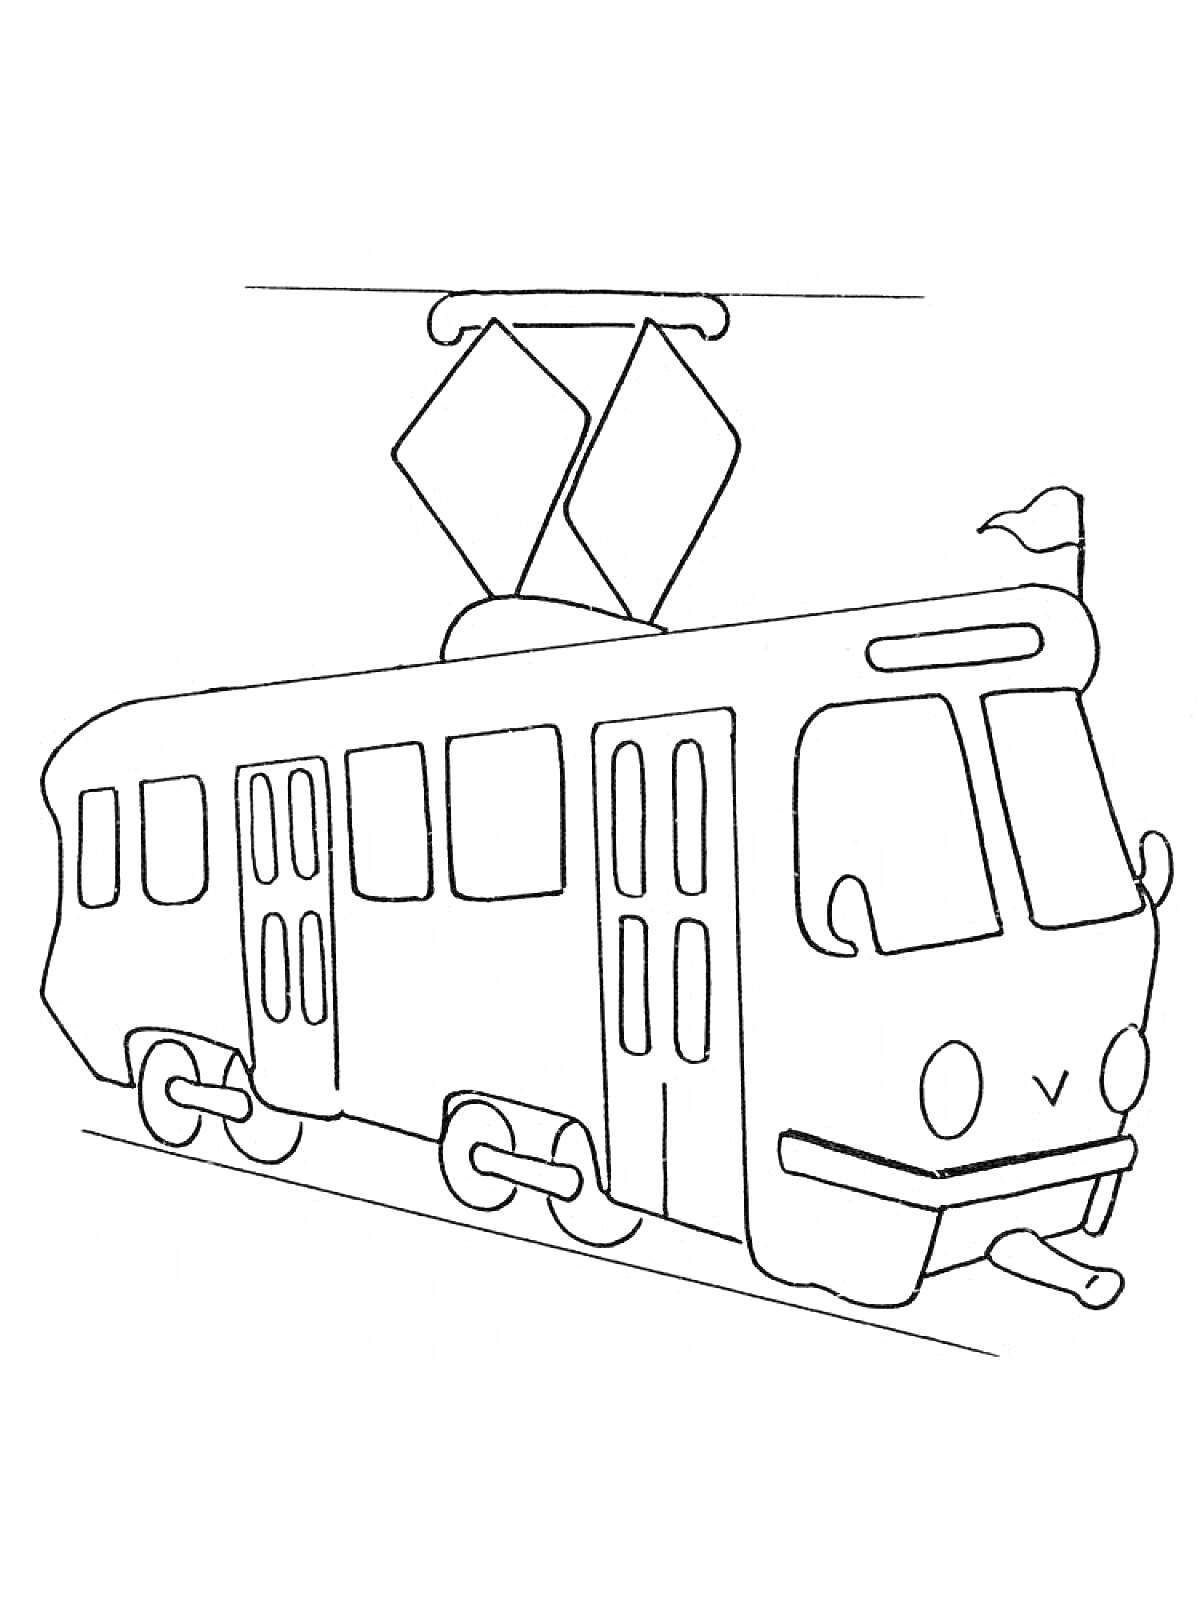 Раскраска Трамвай с двумя дверьми, окнами и флажком